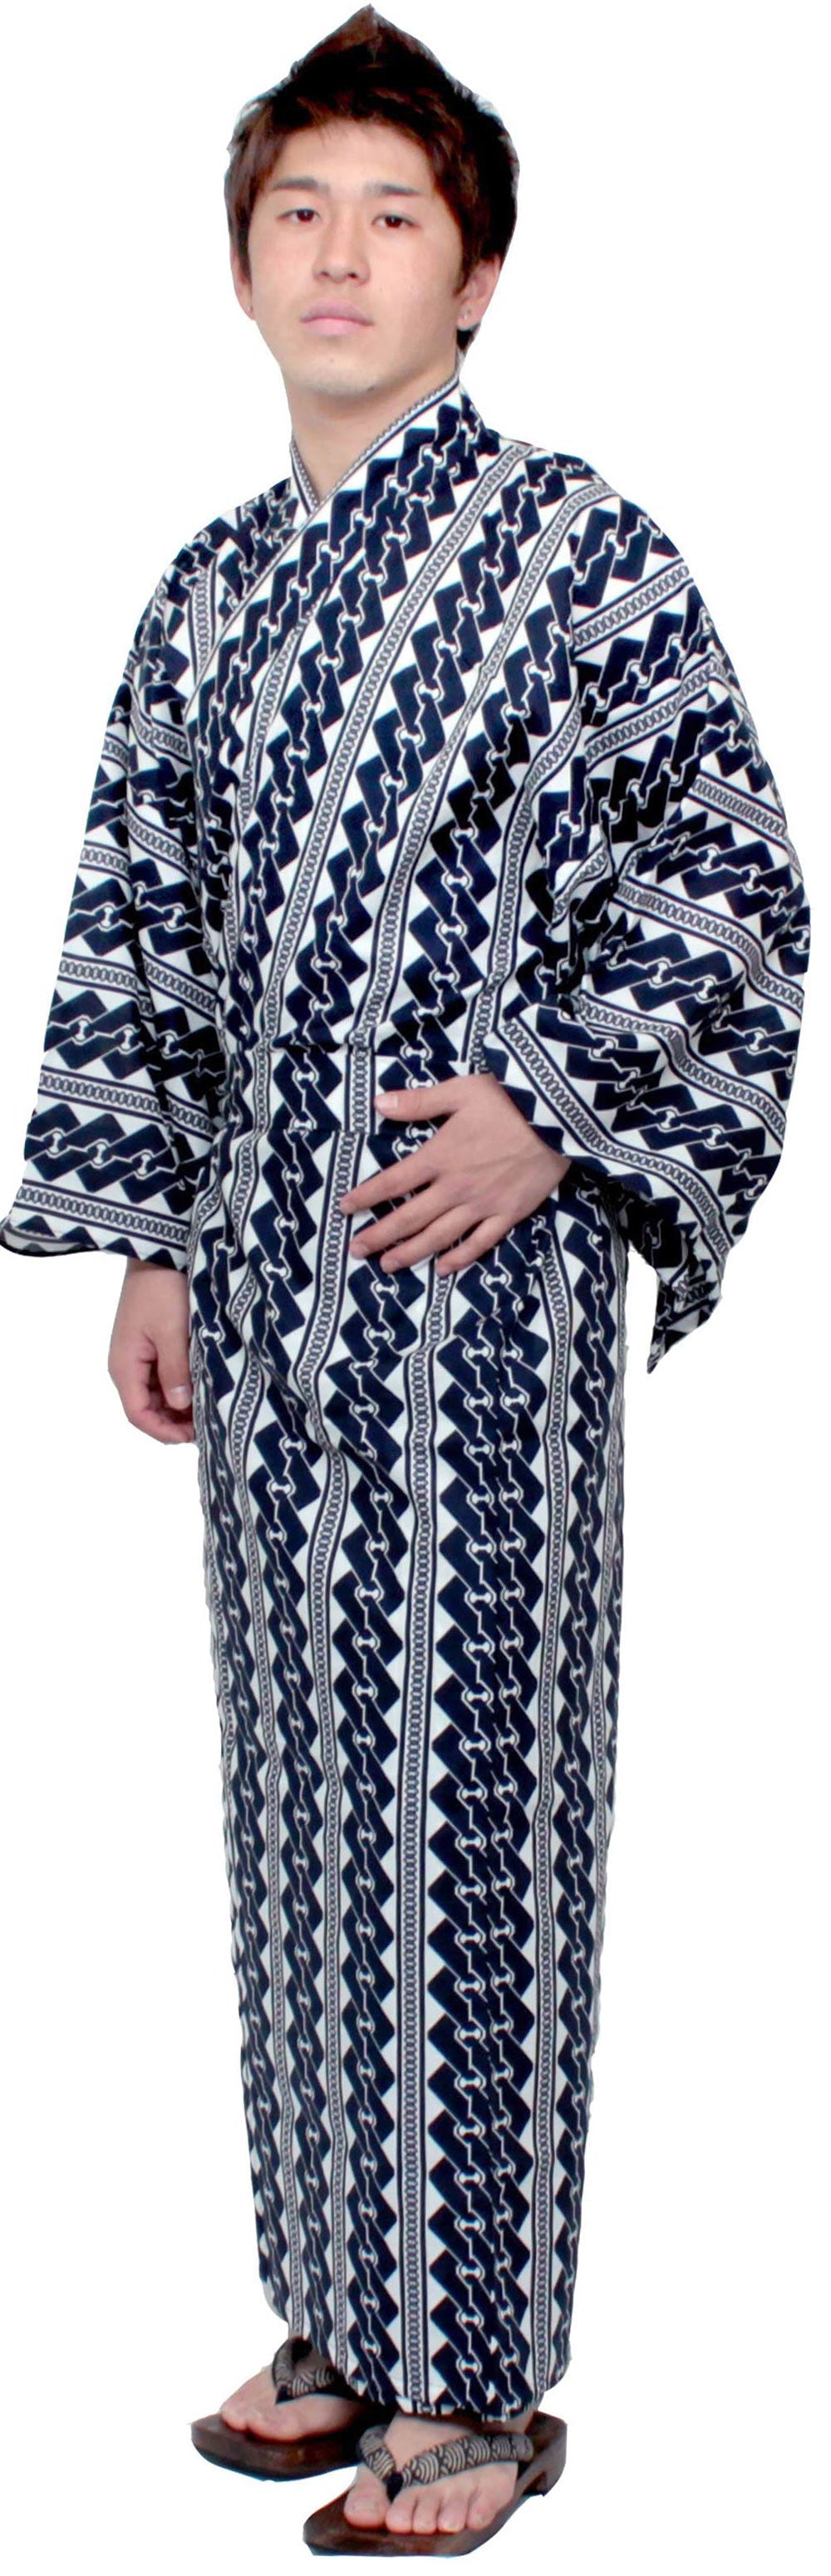 Men's Easy Yukata / Kimono Robe : Japanese Traditional Clothes - Robe Chain Pattern